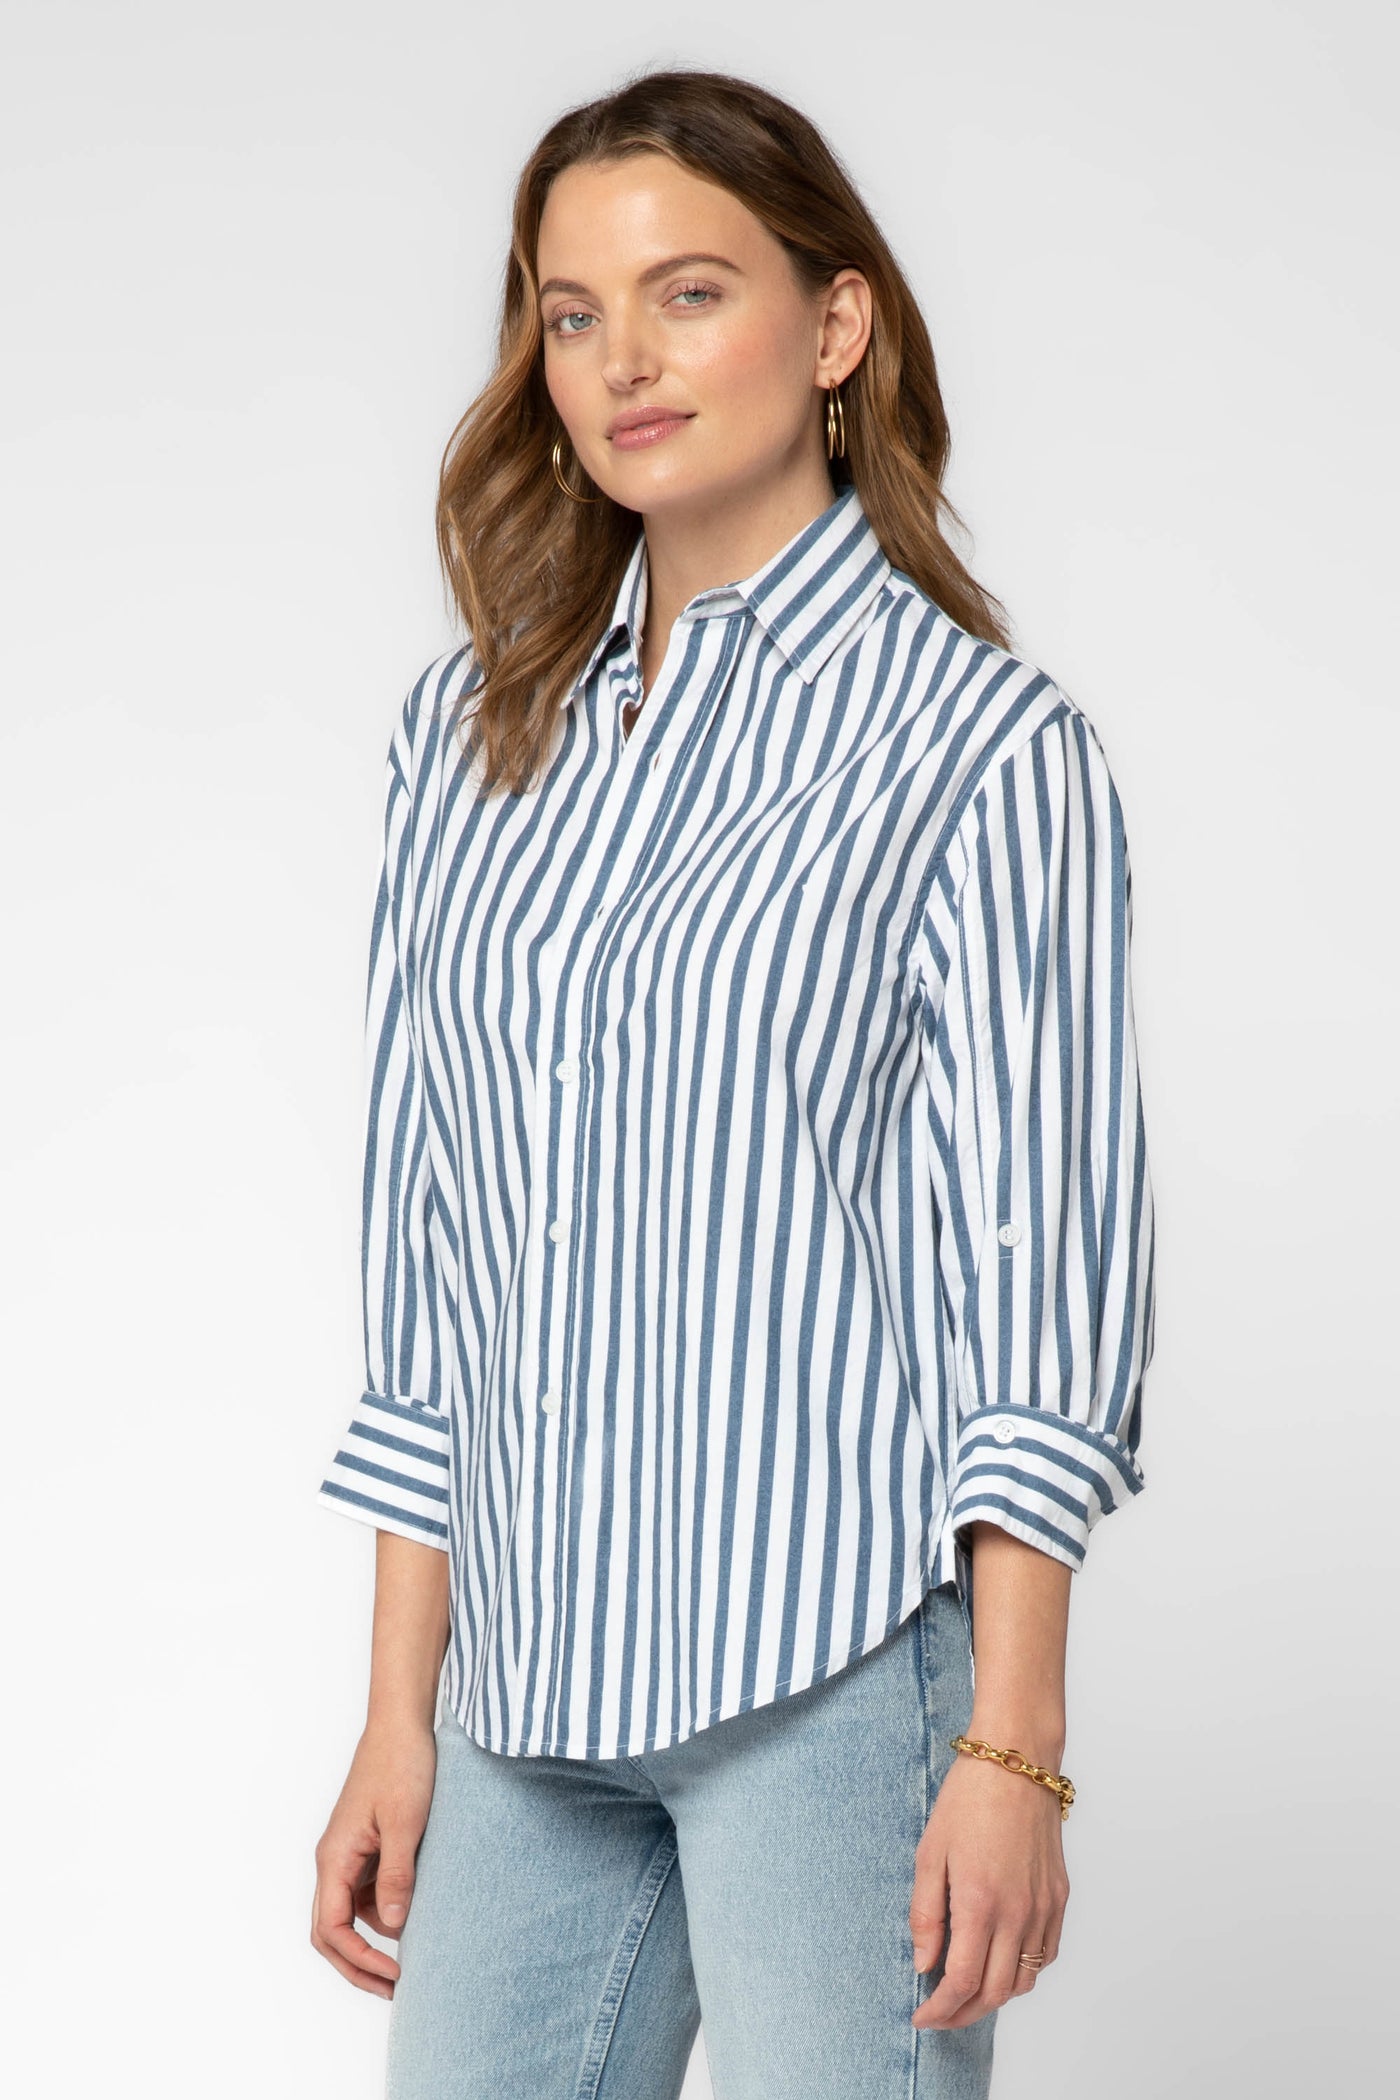 Suri Navy White Stripe Shirt - Tops - Velvet Heart Clothing